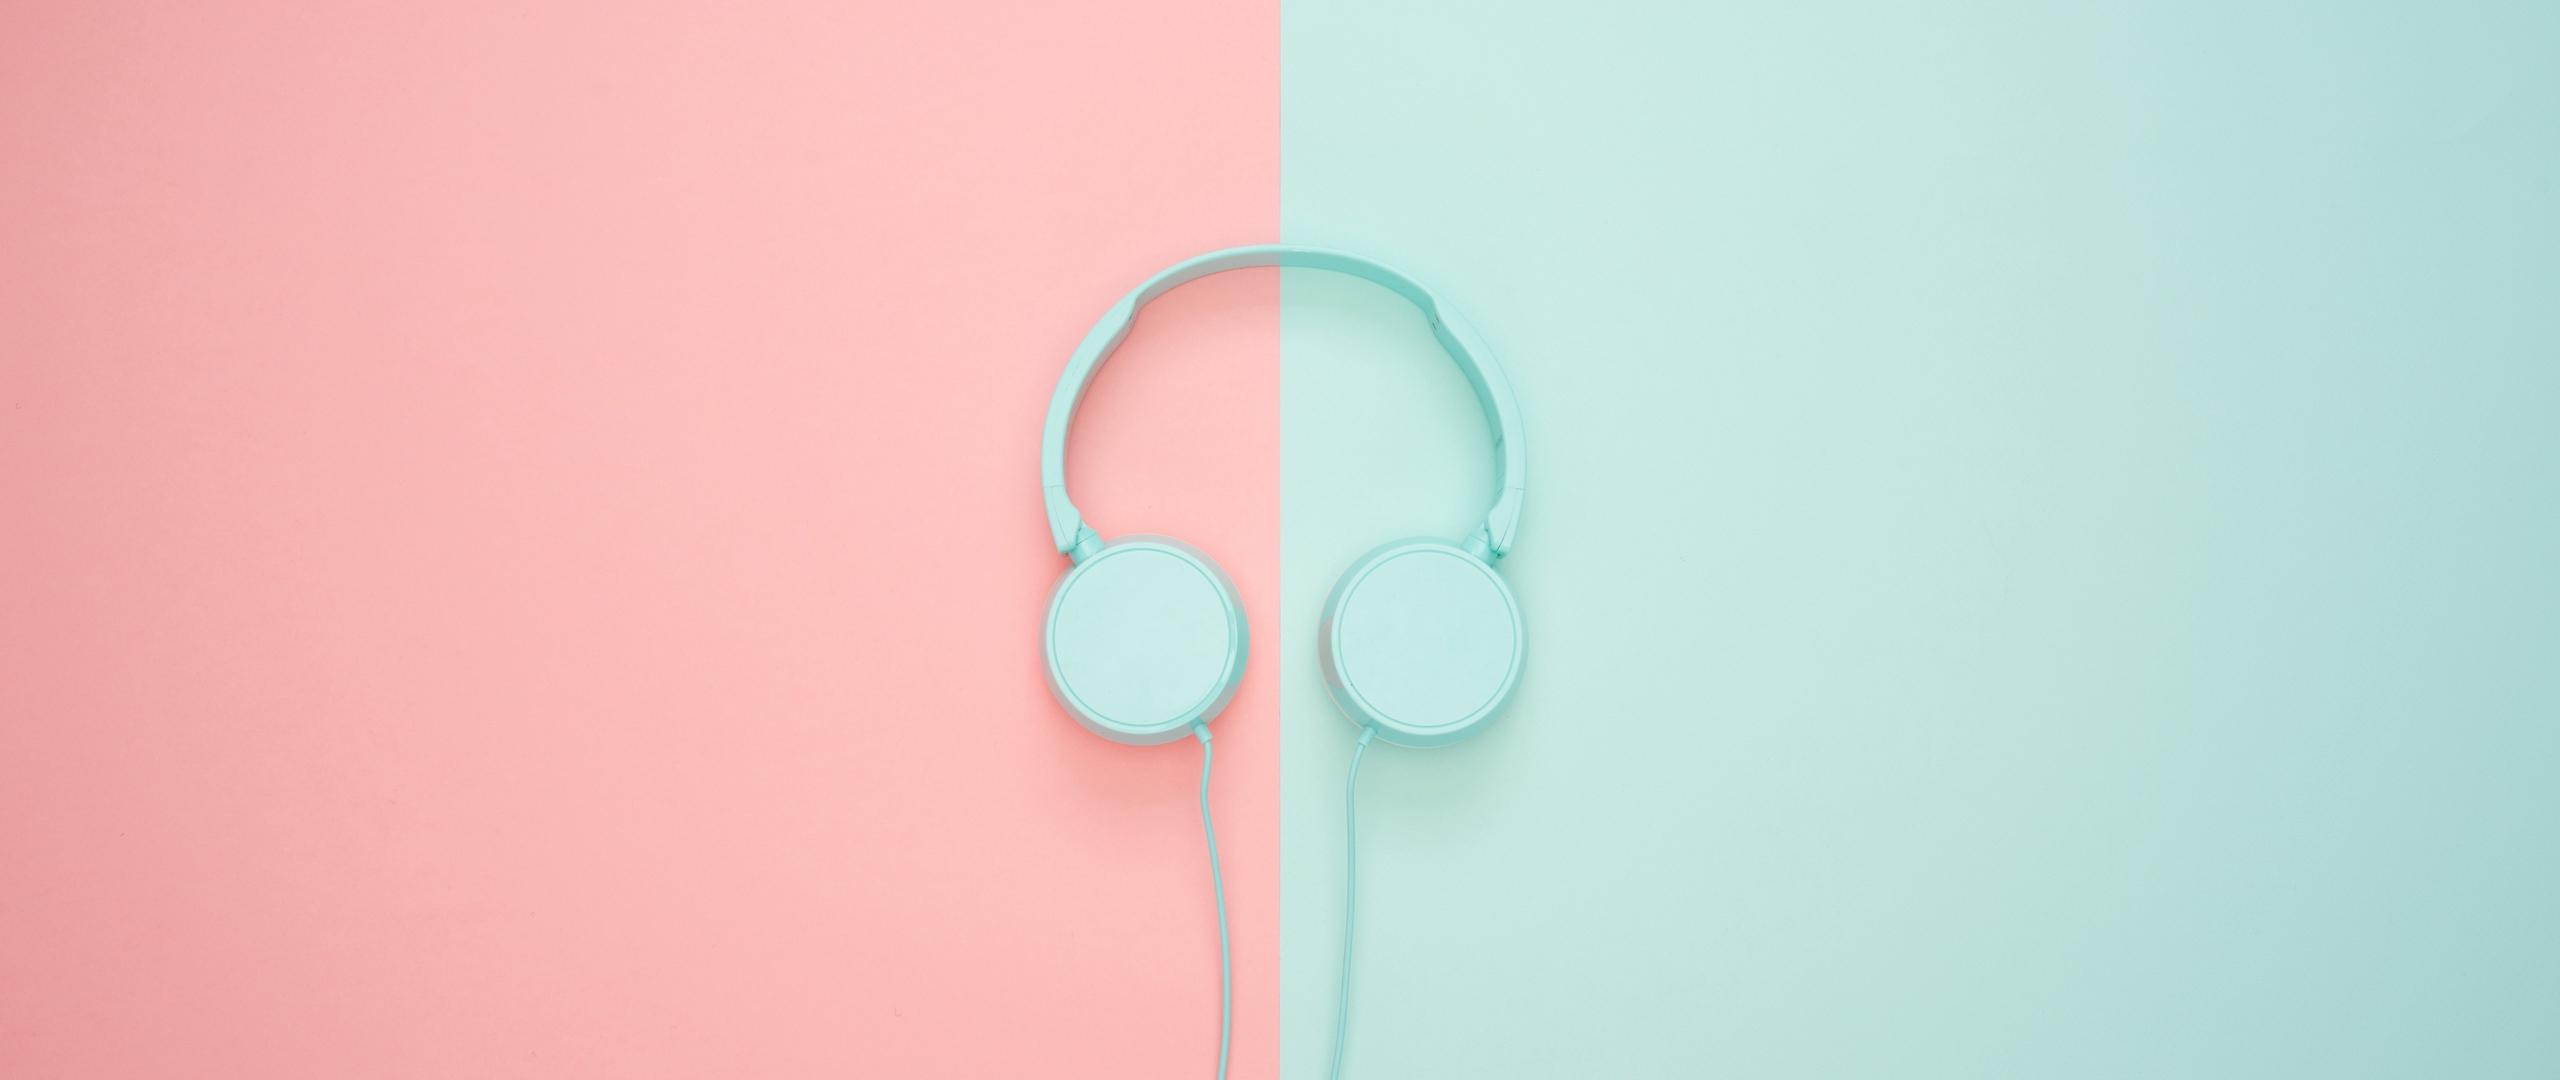 Download wallpaper 2560x1080 headphones, minimalism, pastel